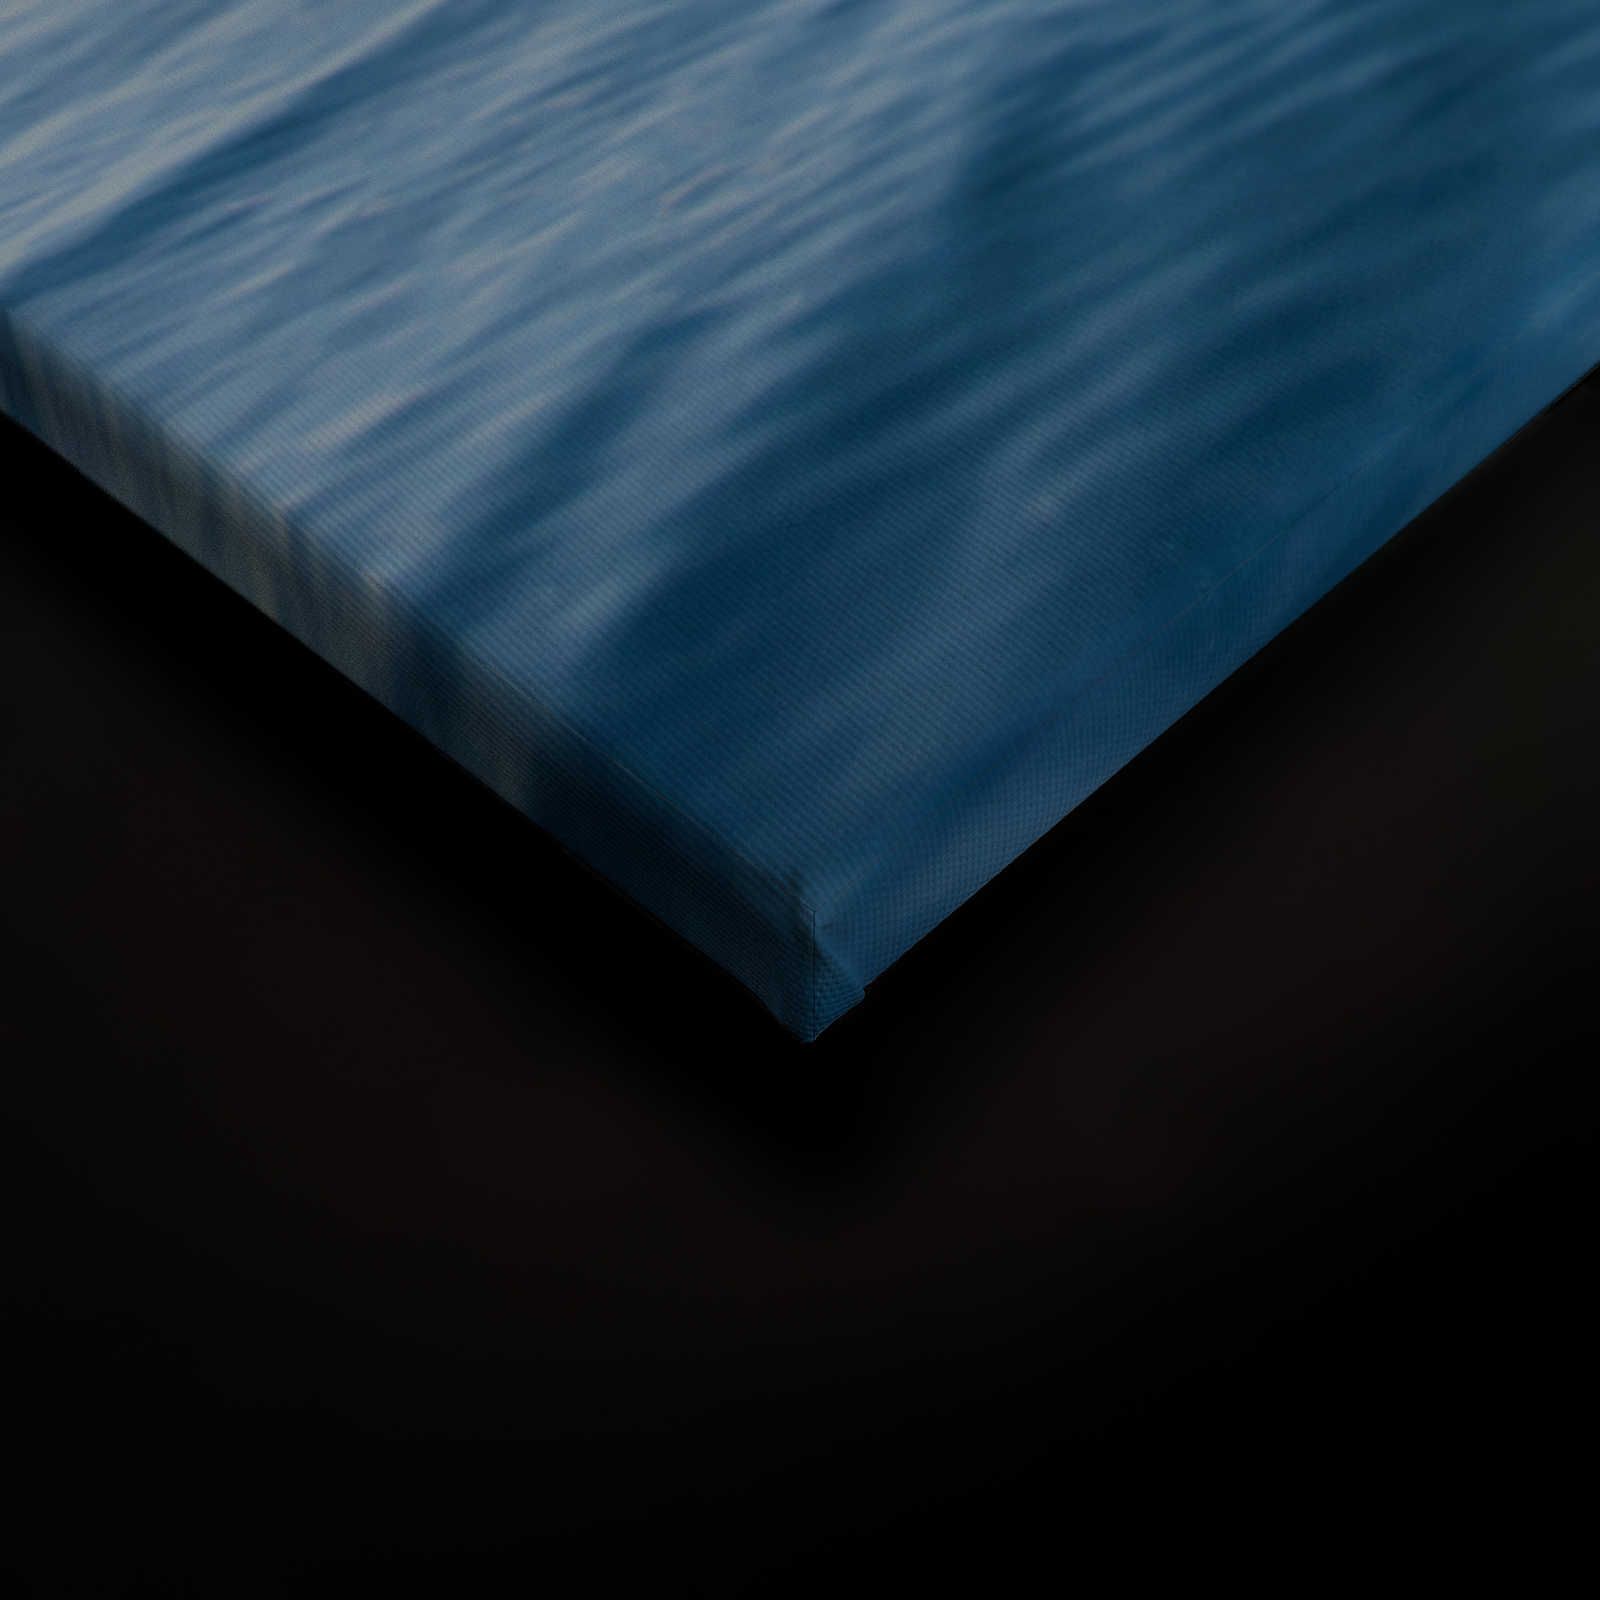             Canvas schilderij open zee met wolken - 0,90 m x 0,60 m
        